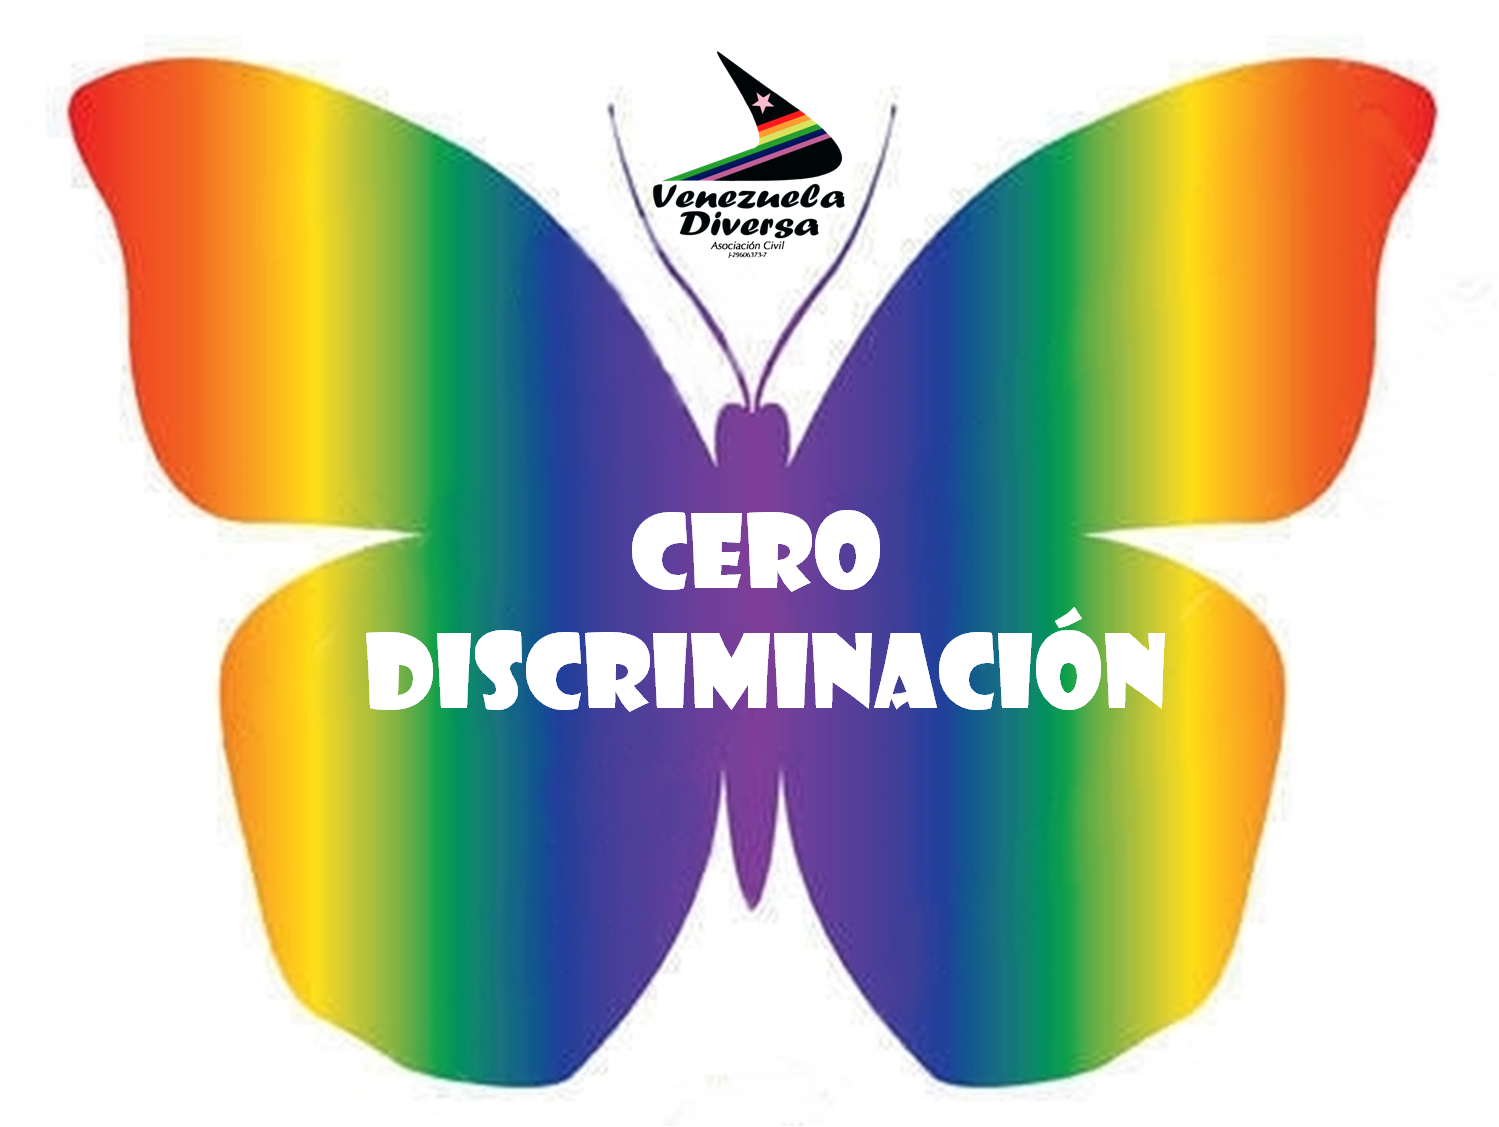 Venezuela Diversa: 01 Marzo 2016. Día Cero Discriminación: Destácate.